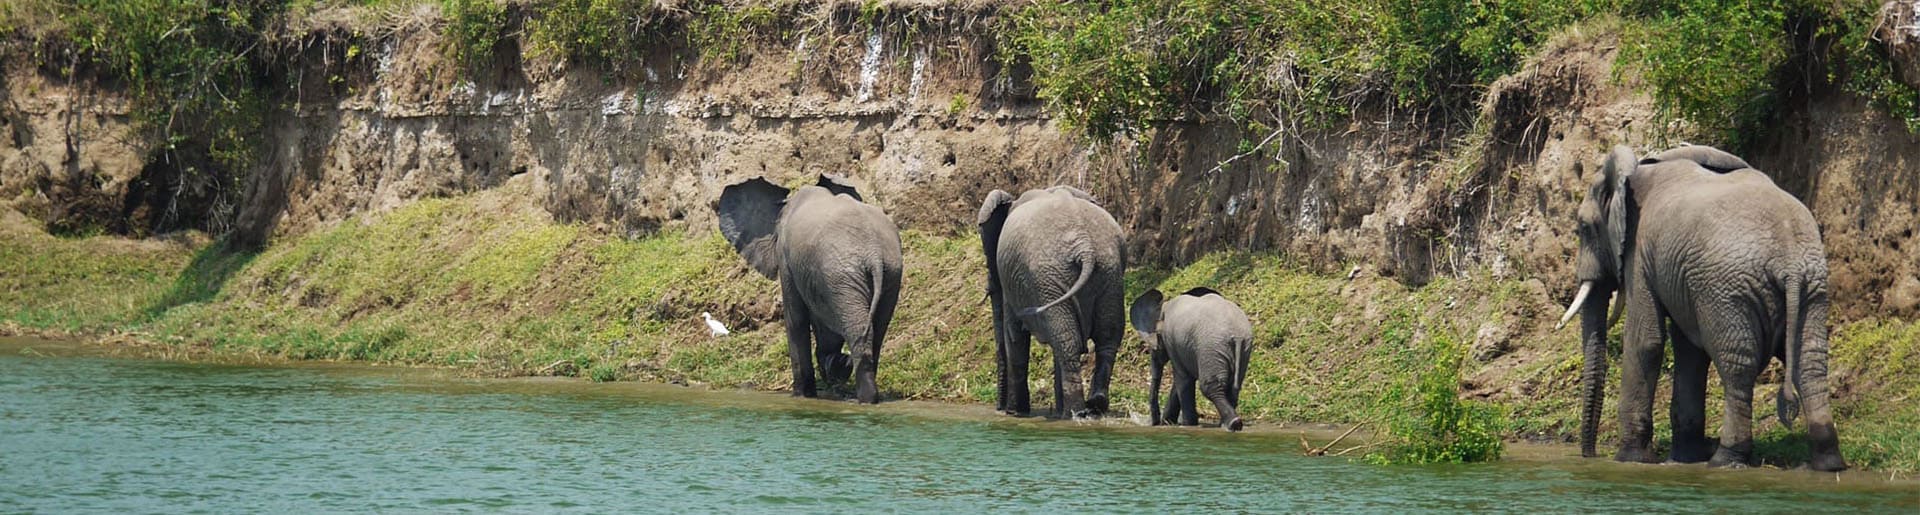 Bannerbild zu Kleingruppenreise Uganda Elefanten m Flusssrand